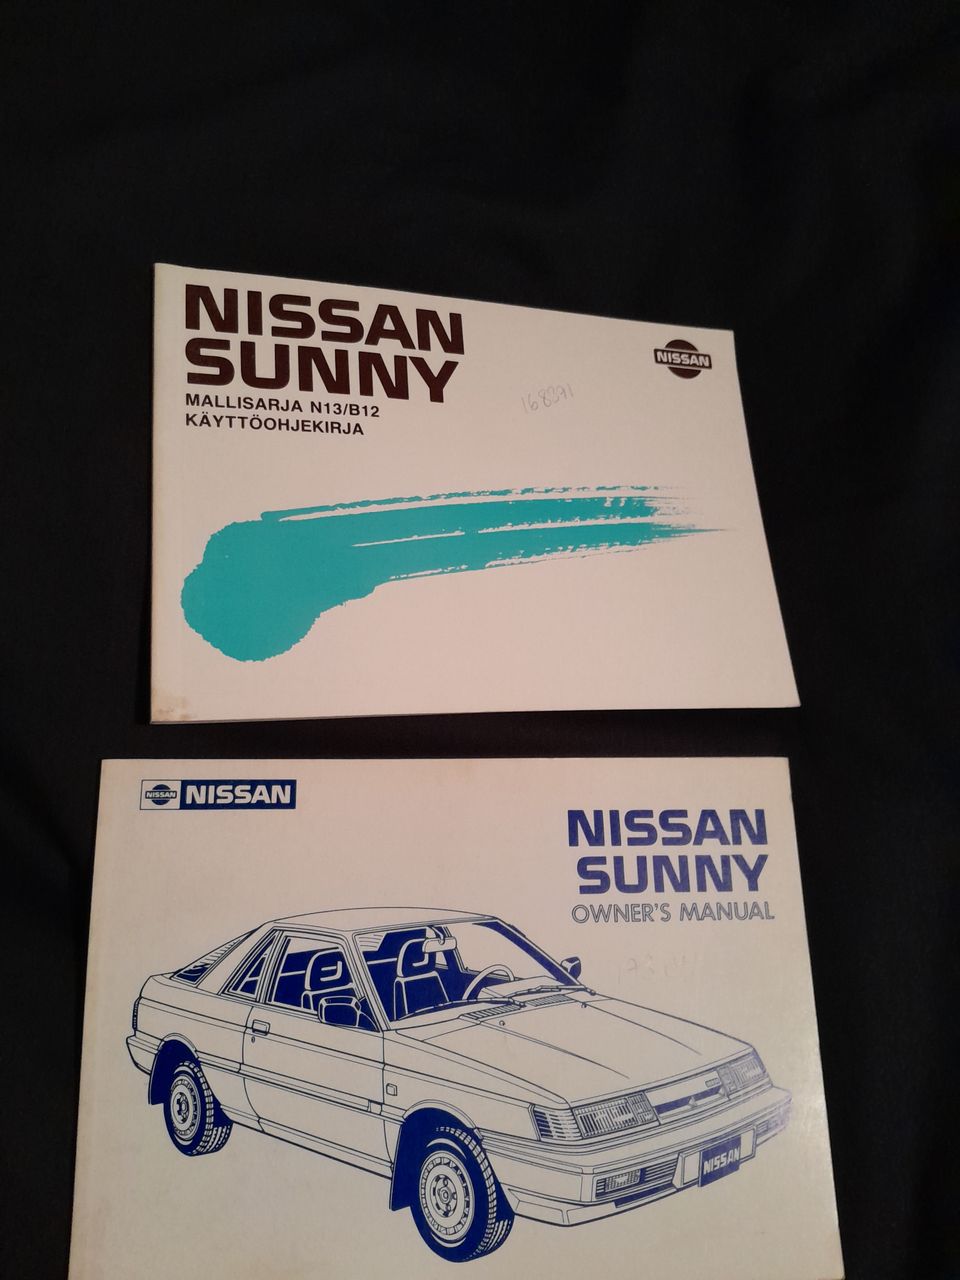 Nissan sunny käyttöohjekirjat